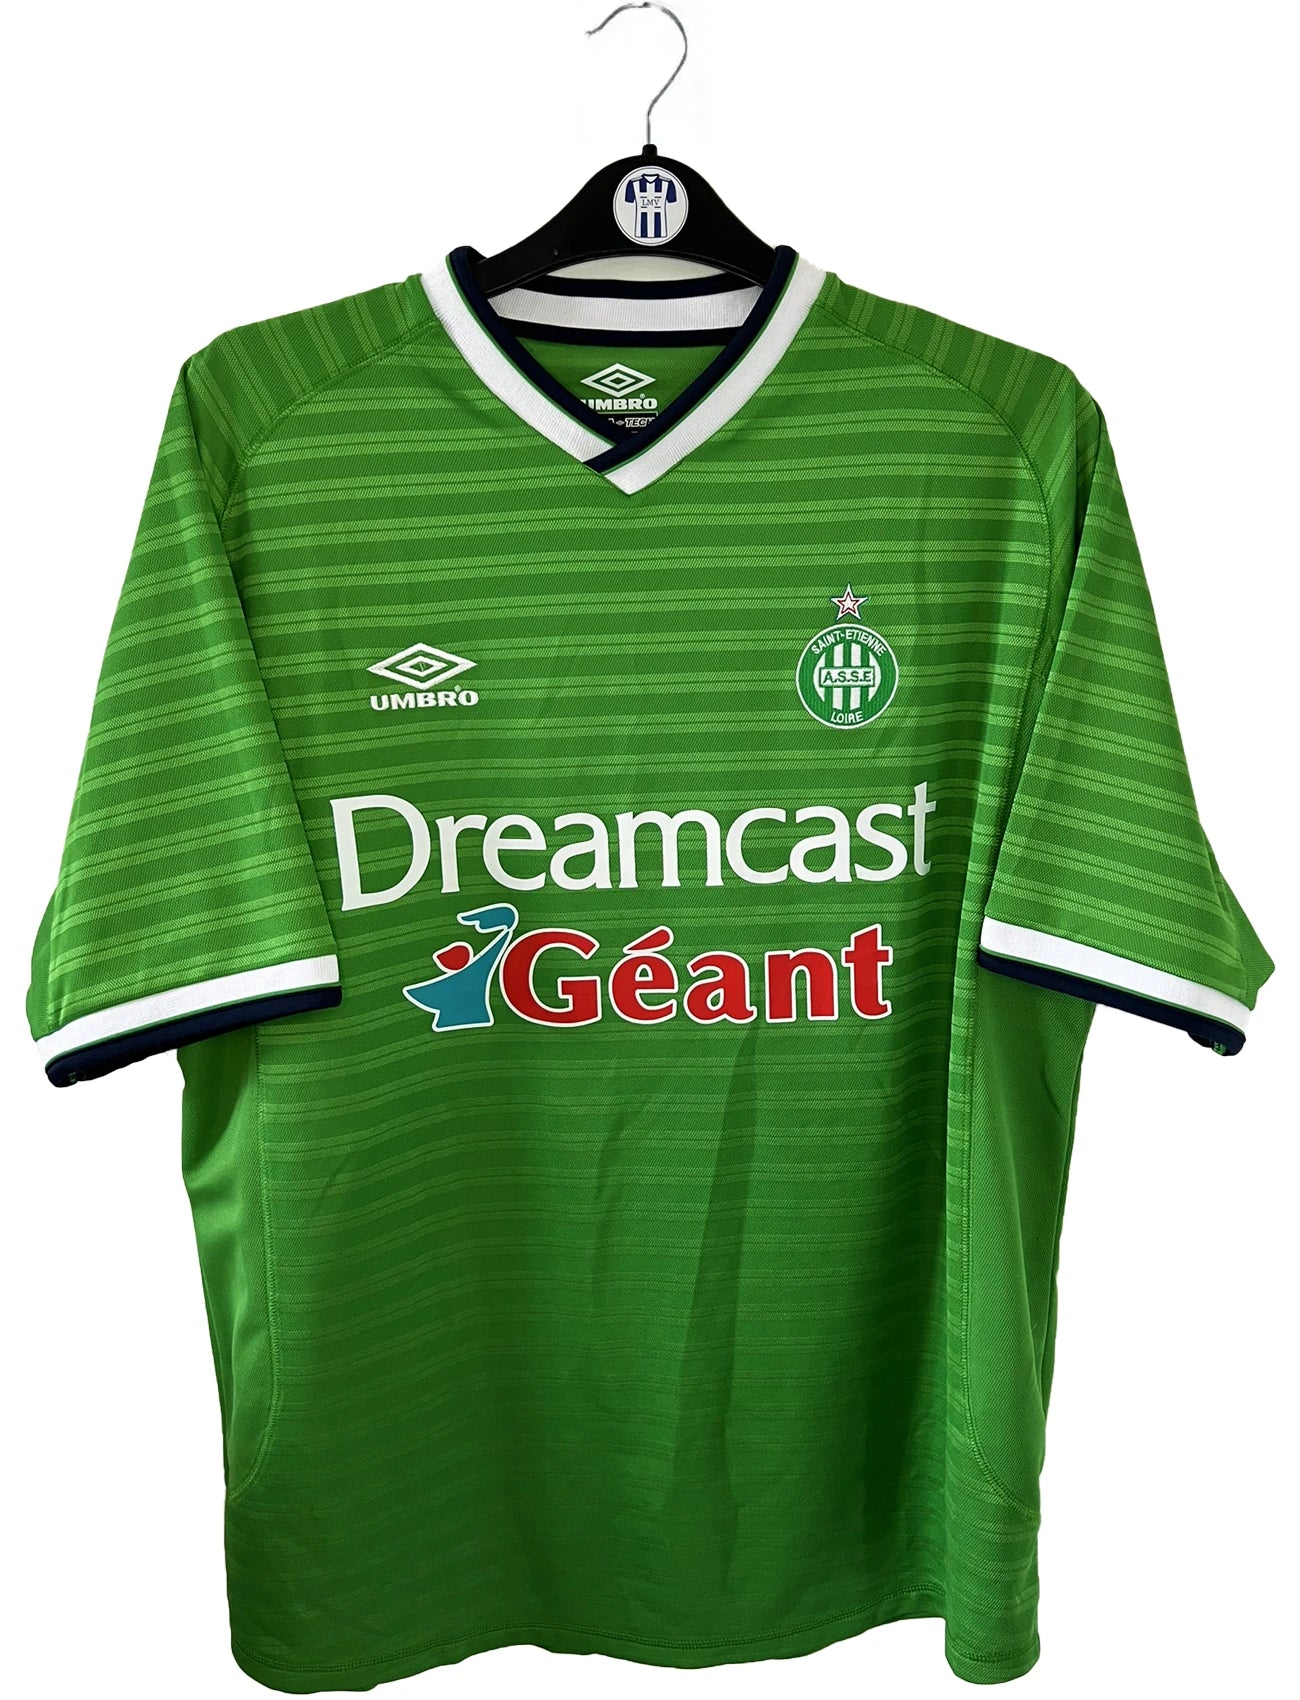 Maillot de foot vintage domicile vert de l'ASSE de la saison 2000/2001. On peut retrouver l'équipementier umbro et le sponsor dreamcast geant. Il s'agit d'un maillot authentique d'époque.